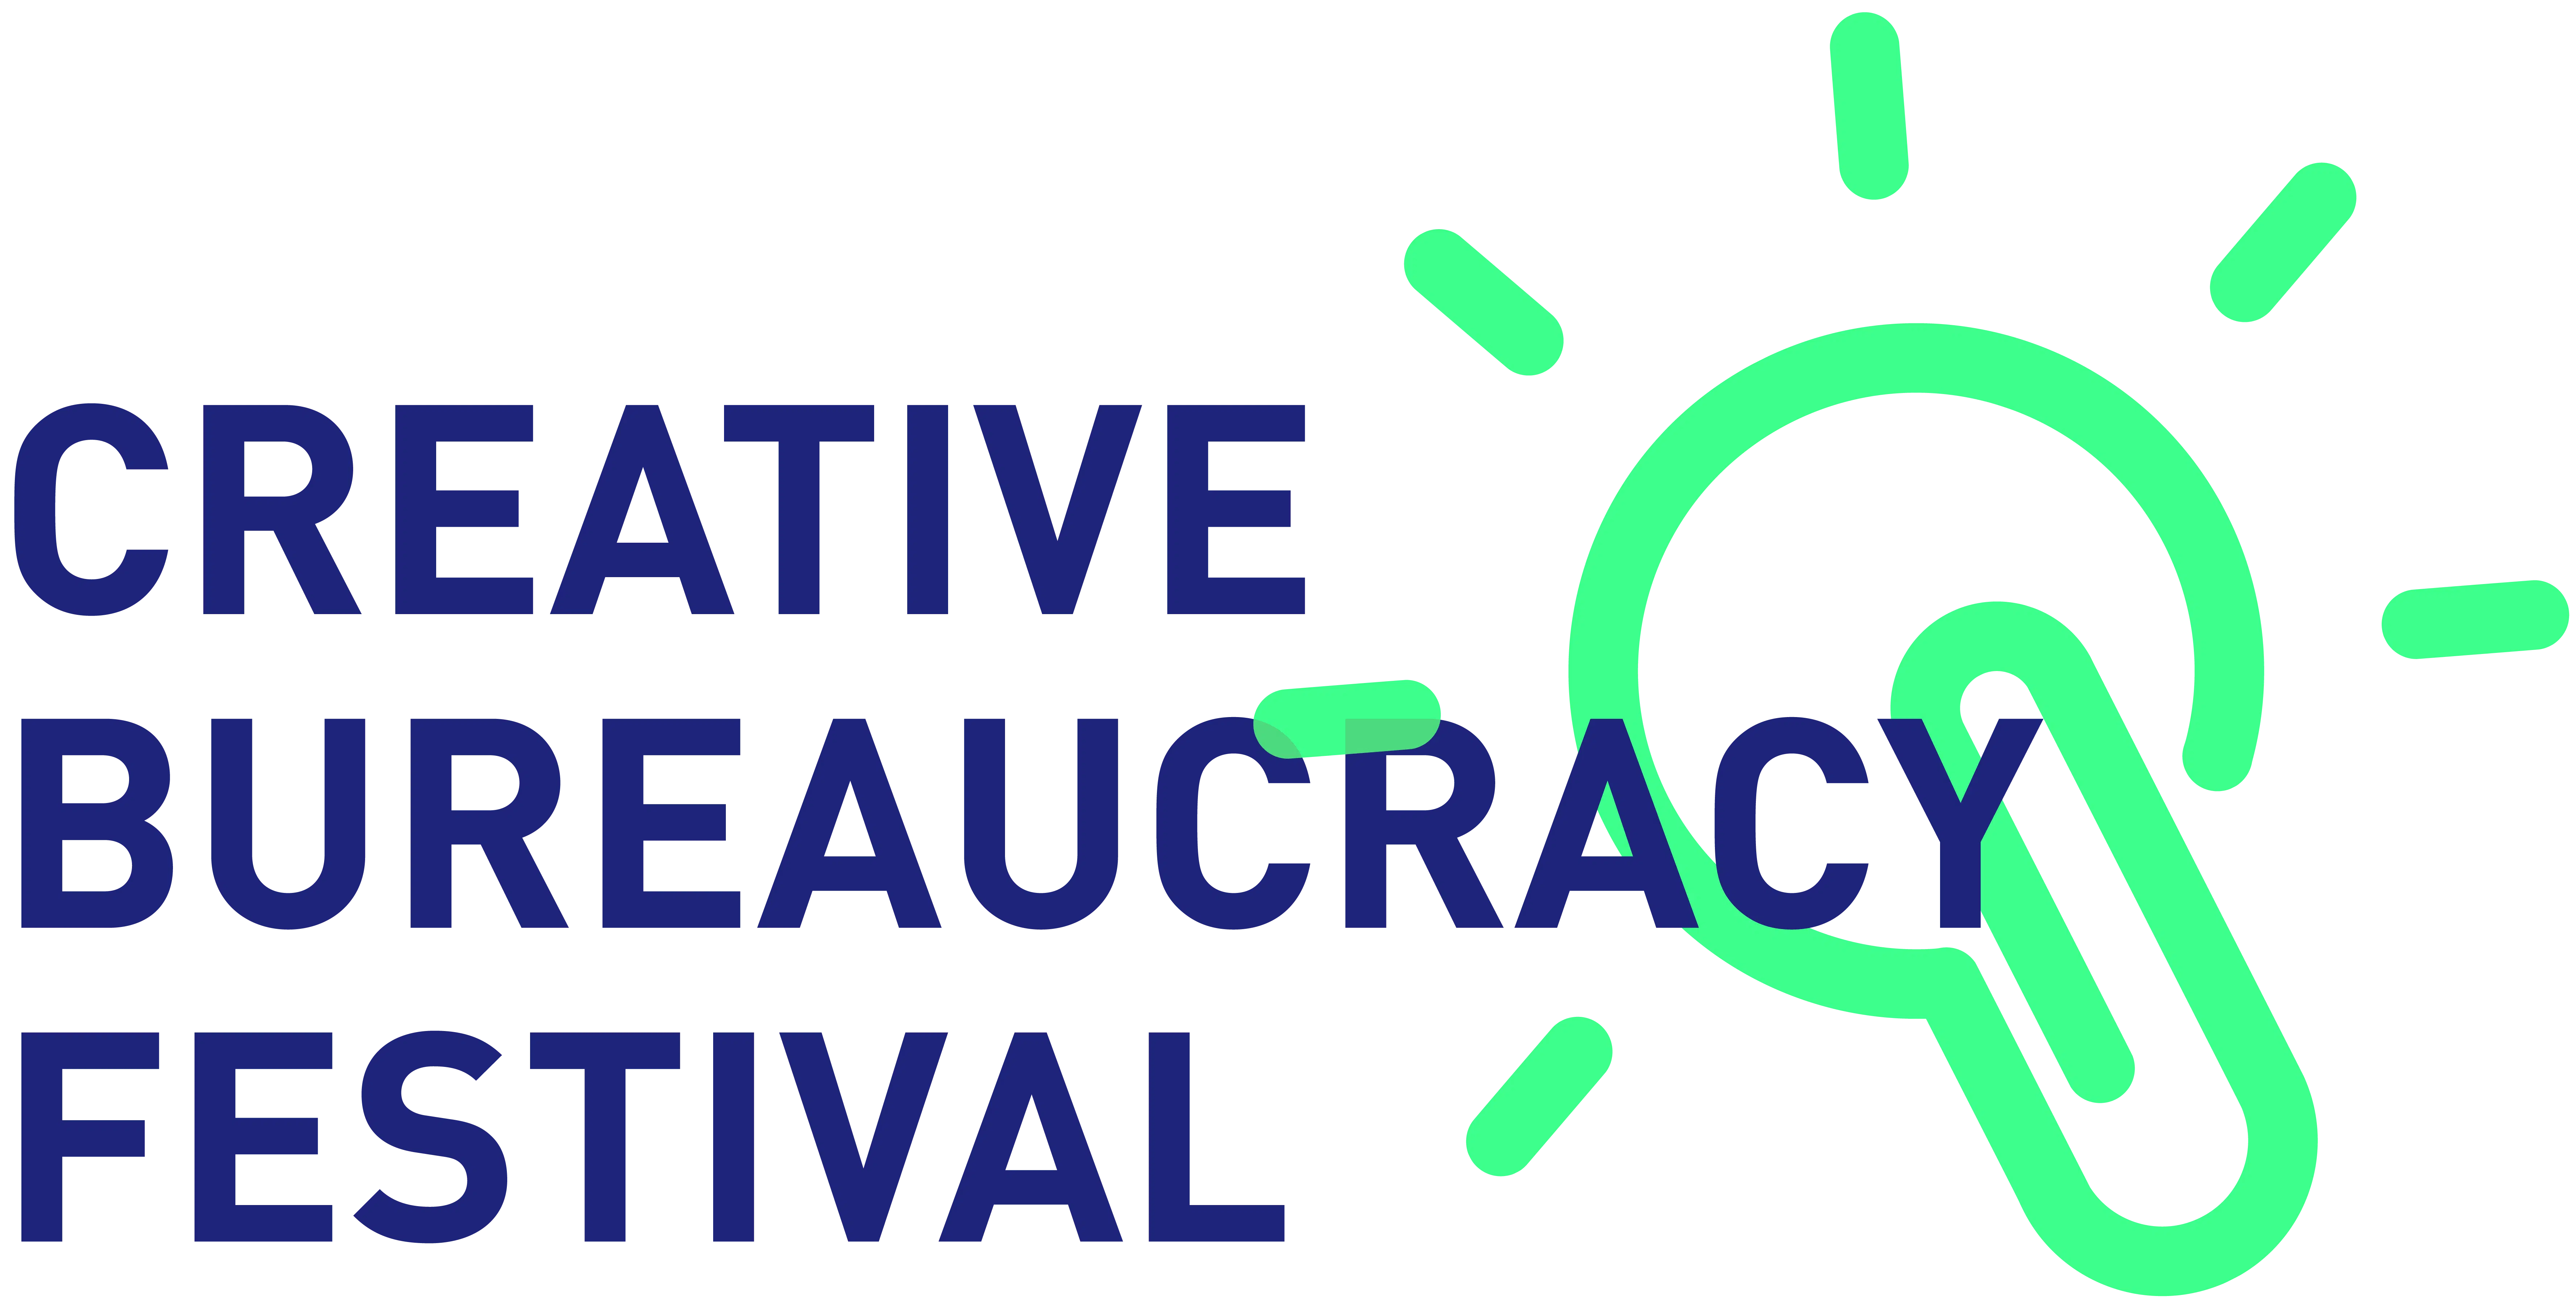 The Creative Bureaucracy Festival